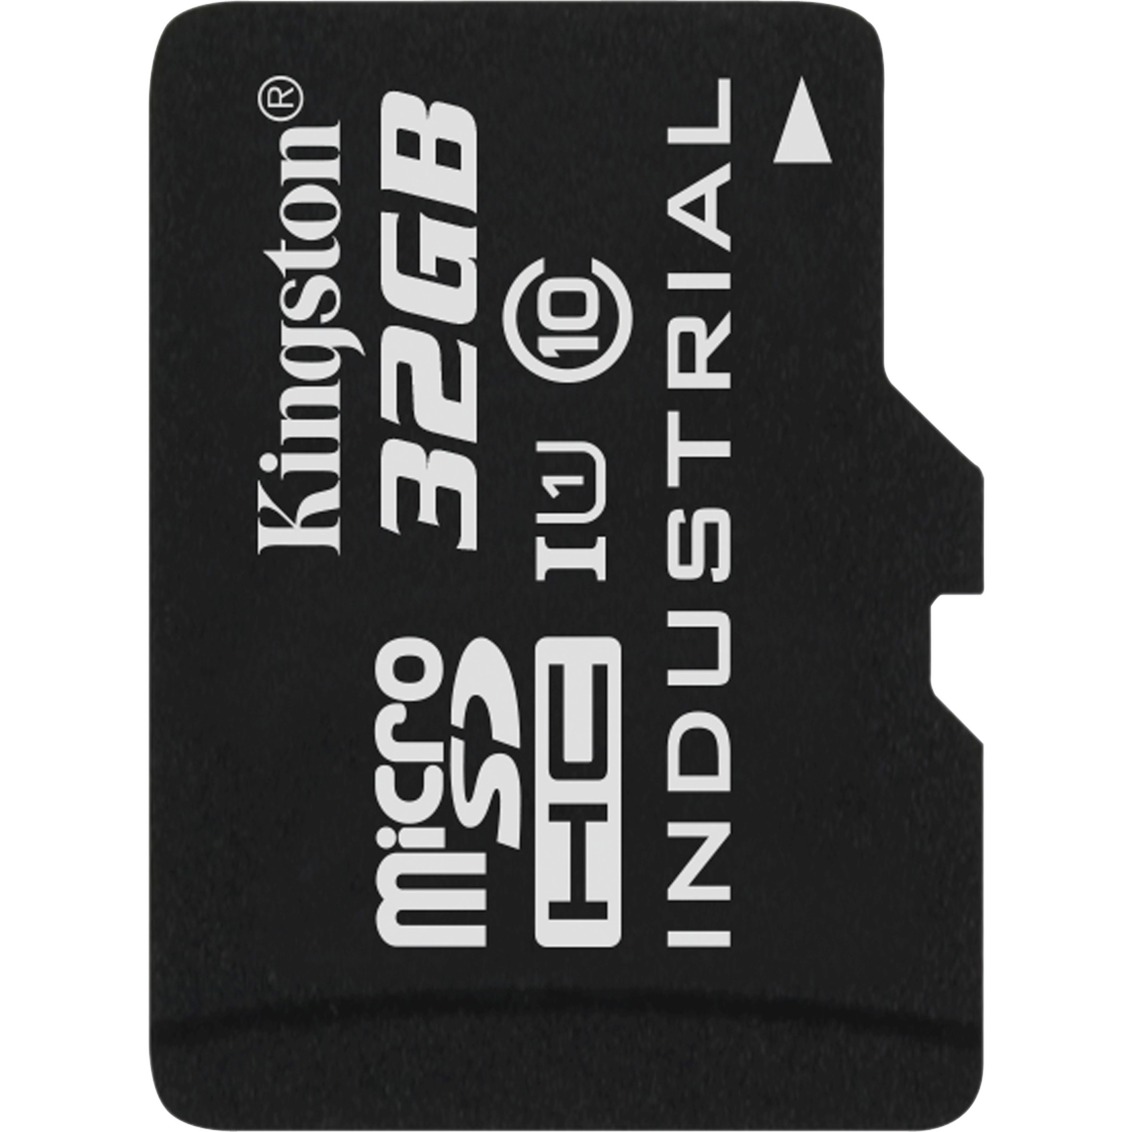 Image of Alternate - 32 GB Industrial SP microSDHC, Speicherkarte online einkaufen bei Alternate